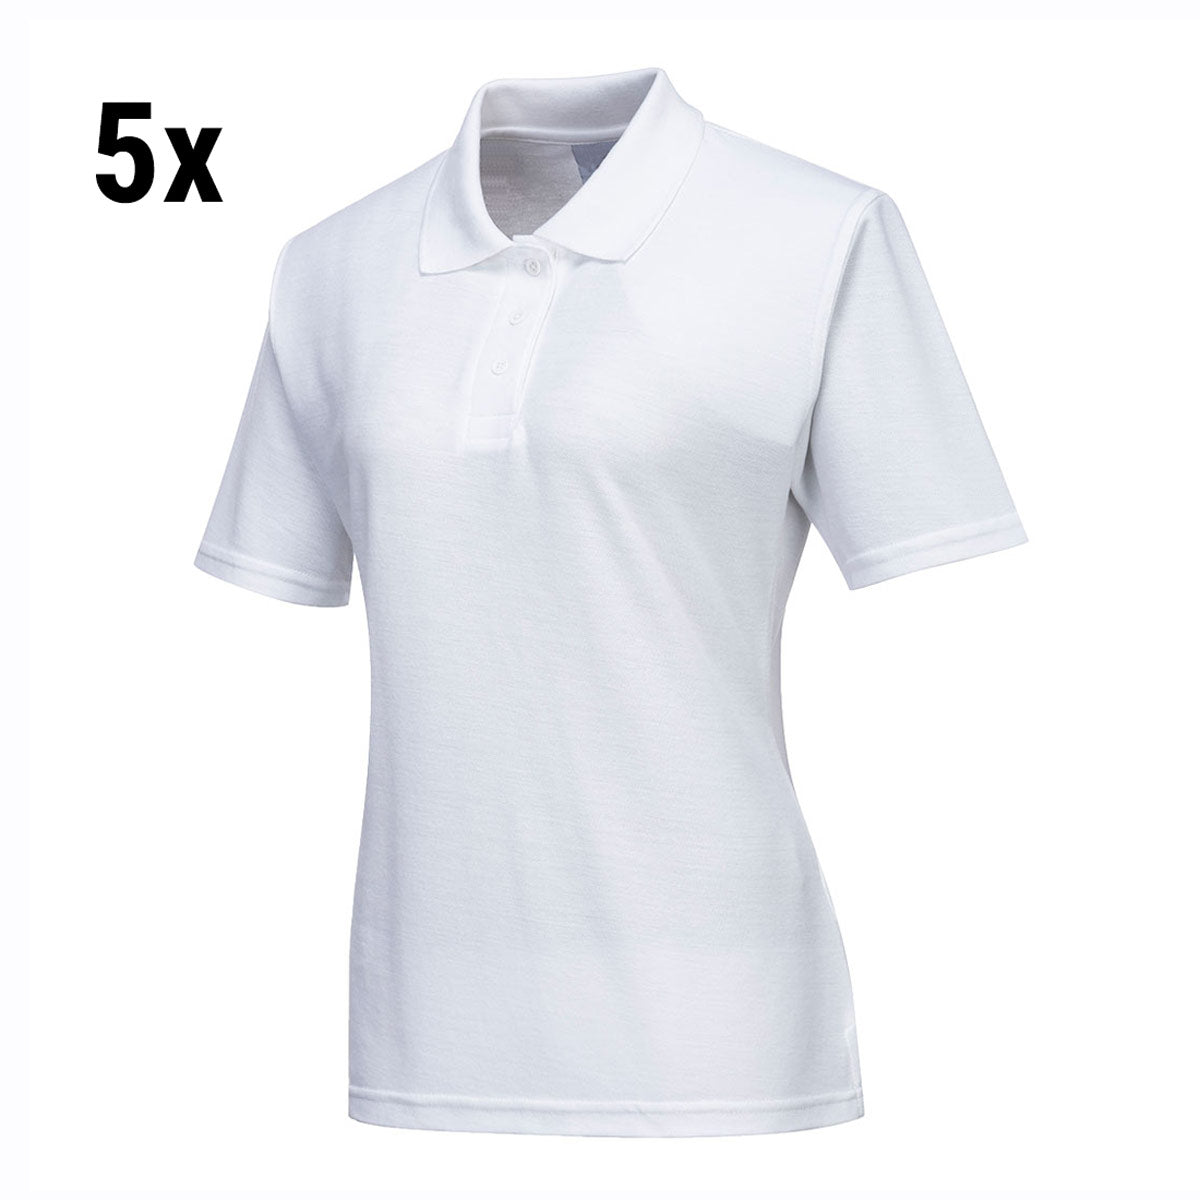 (5 stk.) Polo shirt til damer - hvid - størrelse: L